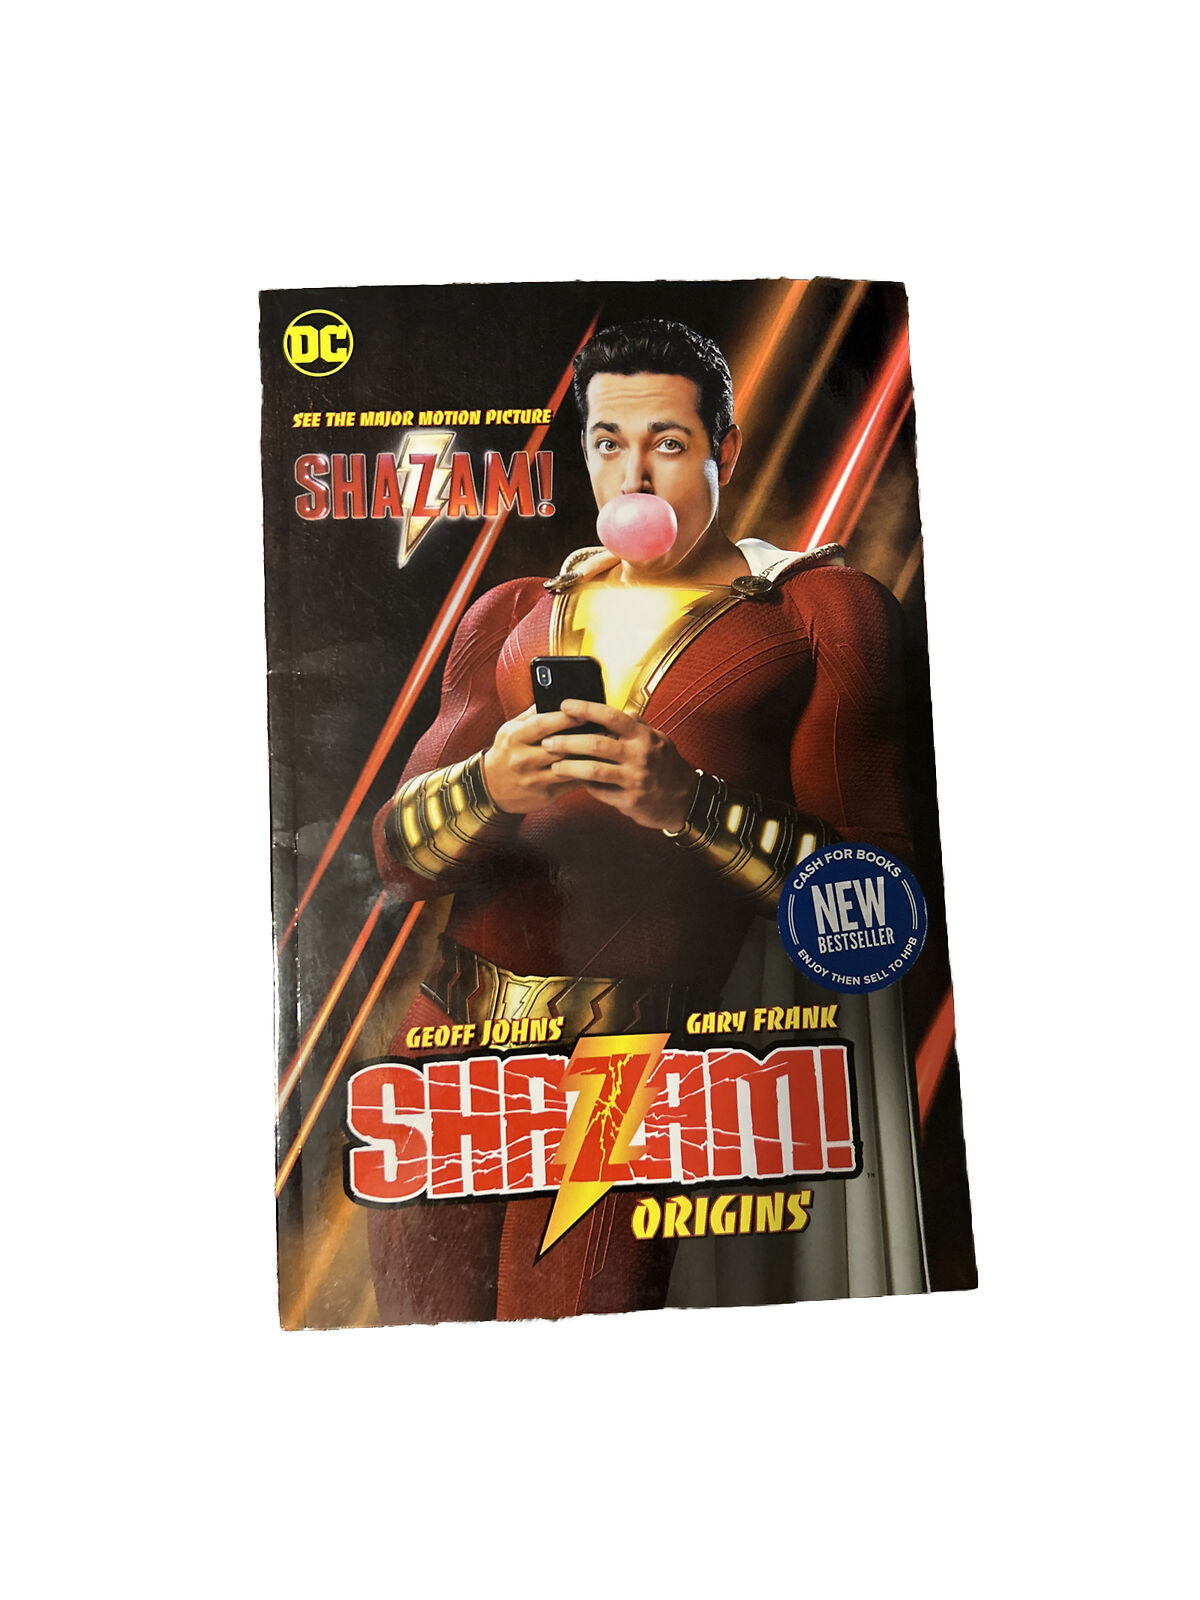 Shazam: Origins (DC Comics, April 2019)